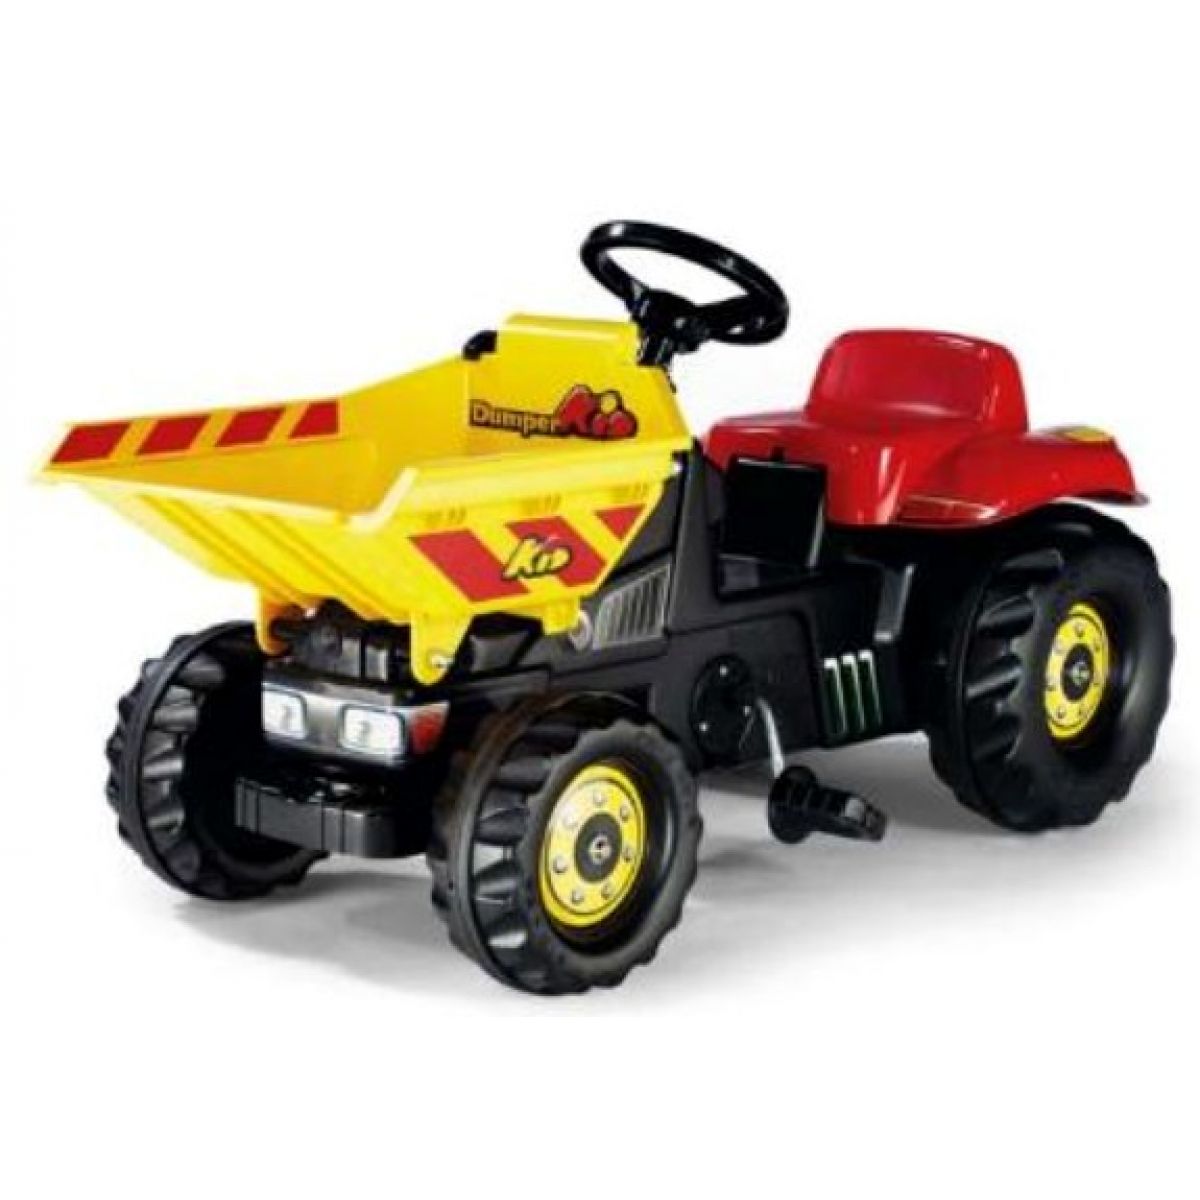 Dumper Kid - šlapací traktor žlutočervený Rolly Toys